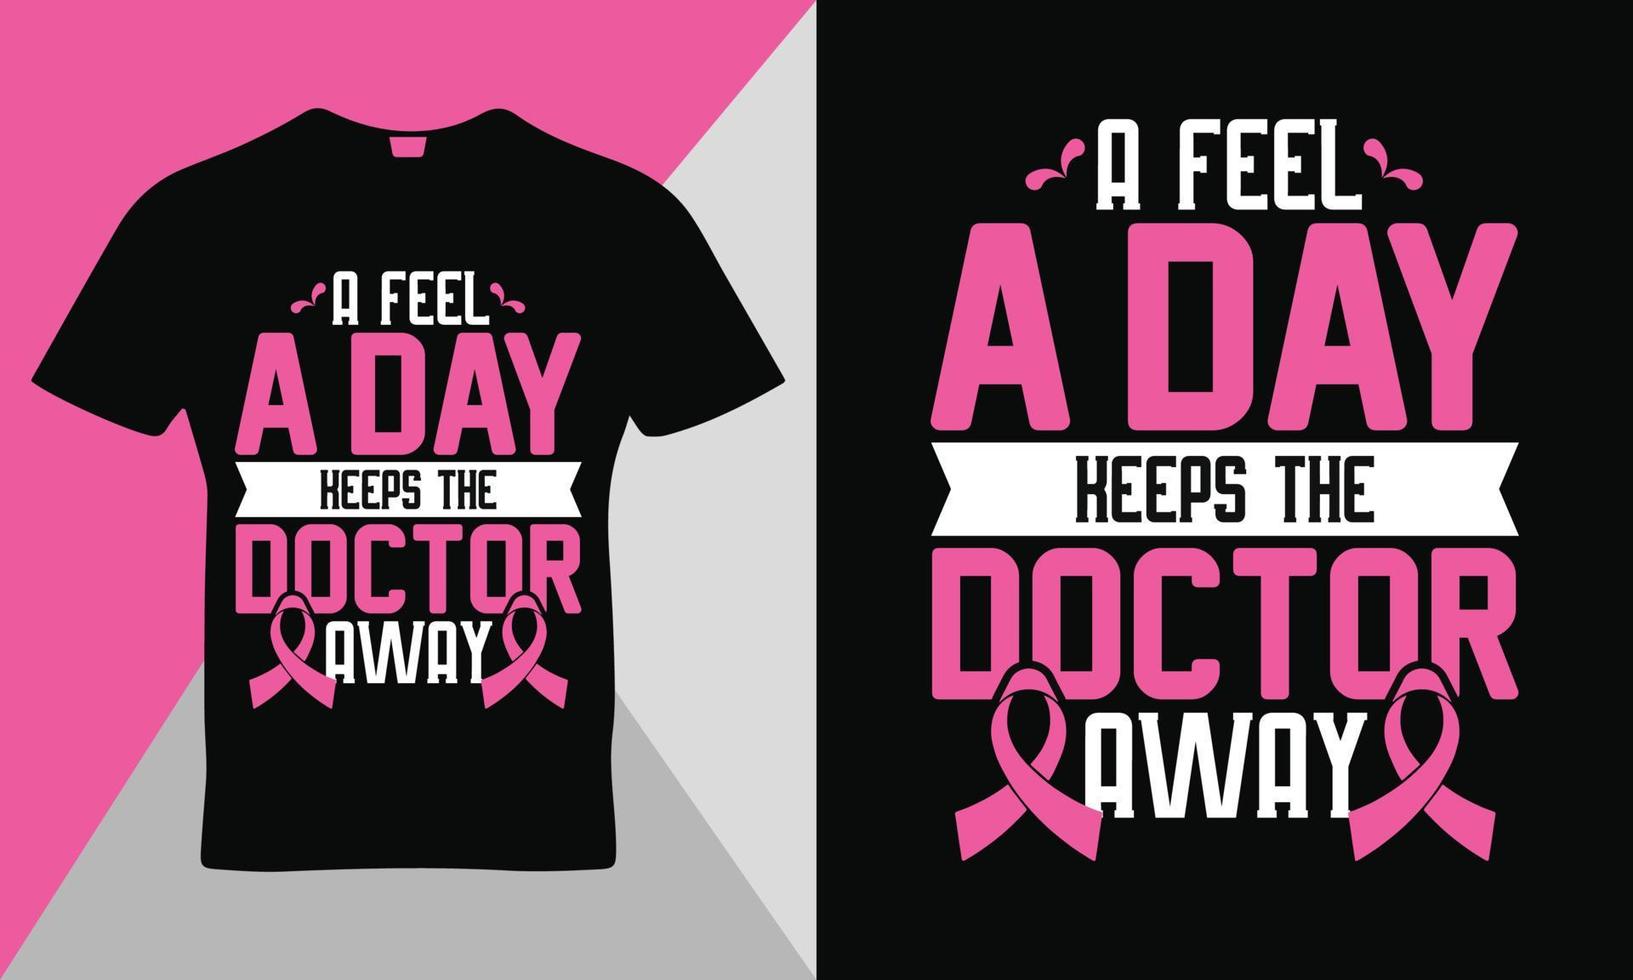 vecteur de modèle de conception de t-shirt de typographie de citation de sensibilisation au cancer du sein